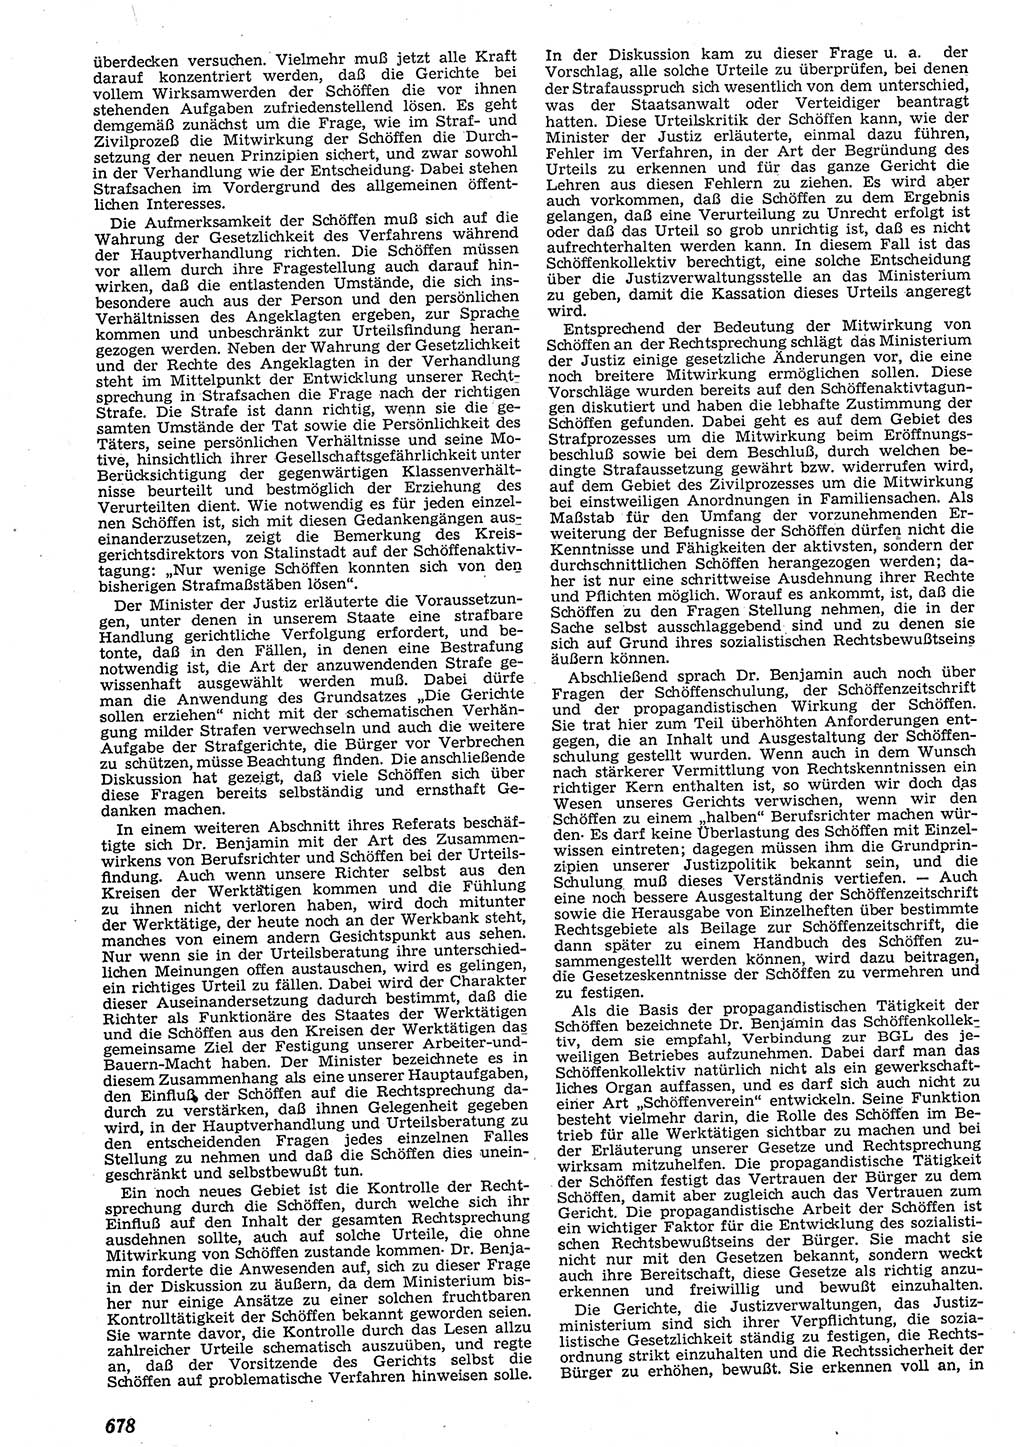 Neue Justiz (NJ), Zeitschrift für Recht und Rechtswissenschaft [Deutsche Demokratische Republik (DDR)], 10. Jahrgang 1956, Seite 678 (NJ DDR 1956, S. 678)